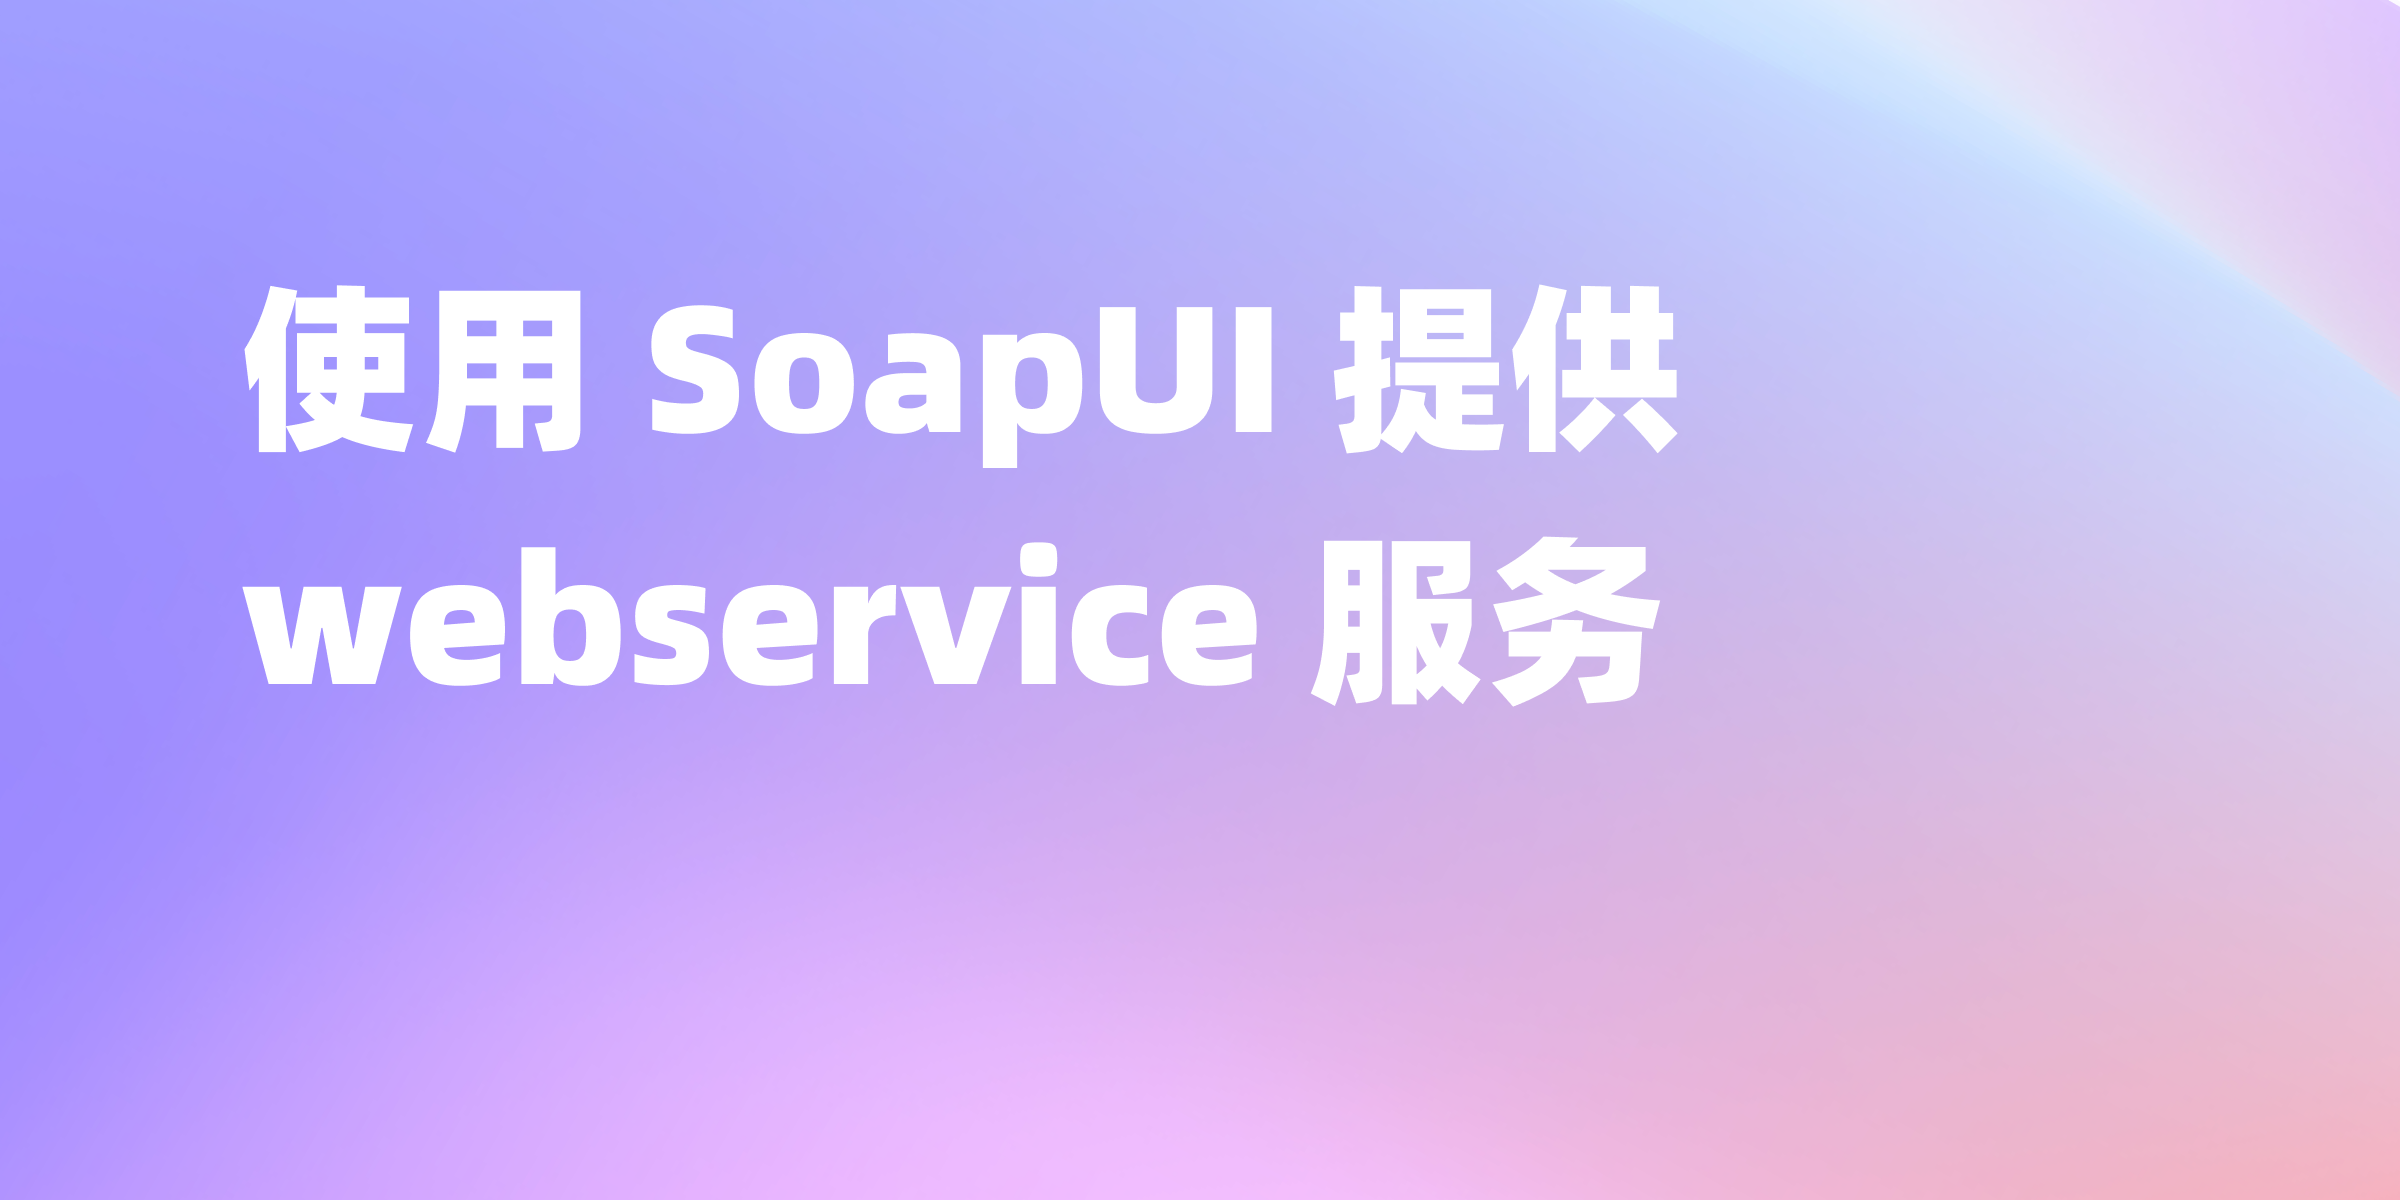 SoapUI 提供 webservice  服务吗？